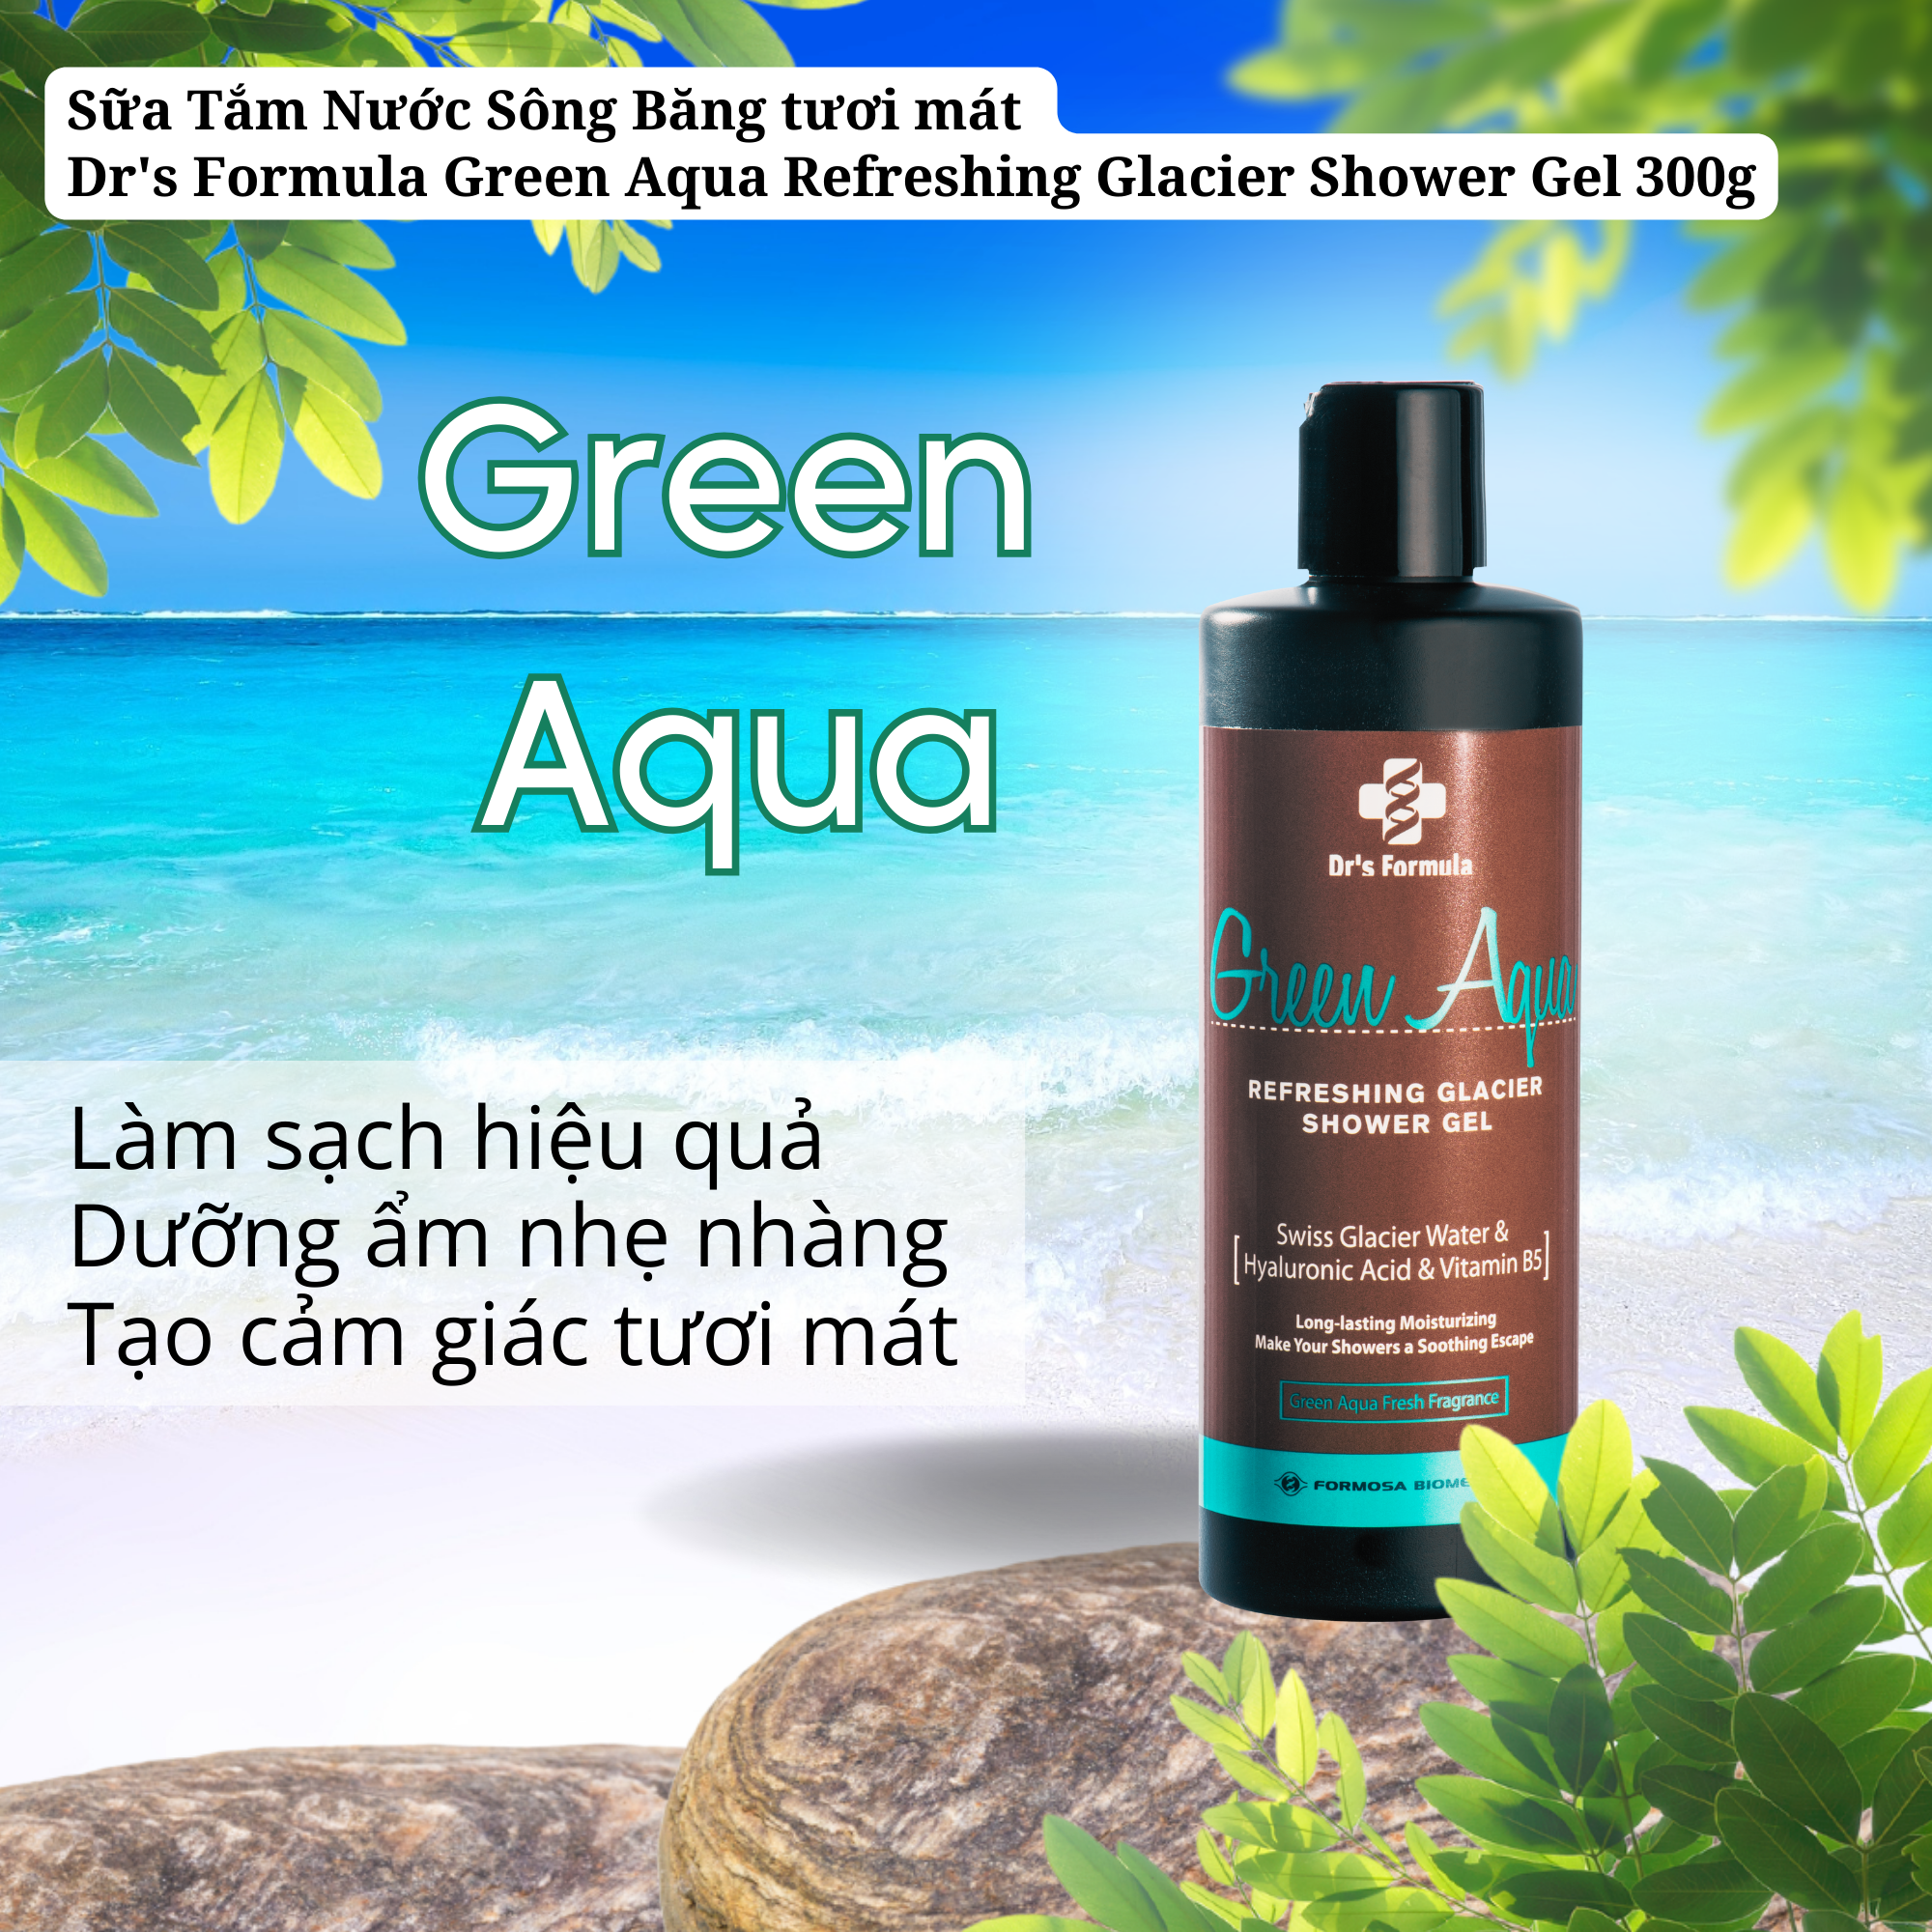 Sữa Tắm Nước Sông Băng Hương Green Aqua Dưỡng Da Tươi Mát Dr's Formula Green Aqua Refreshing Glacier Shower Gel 300g